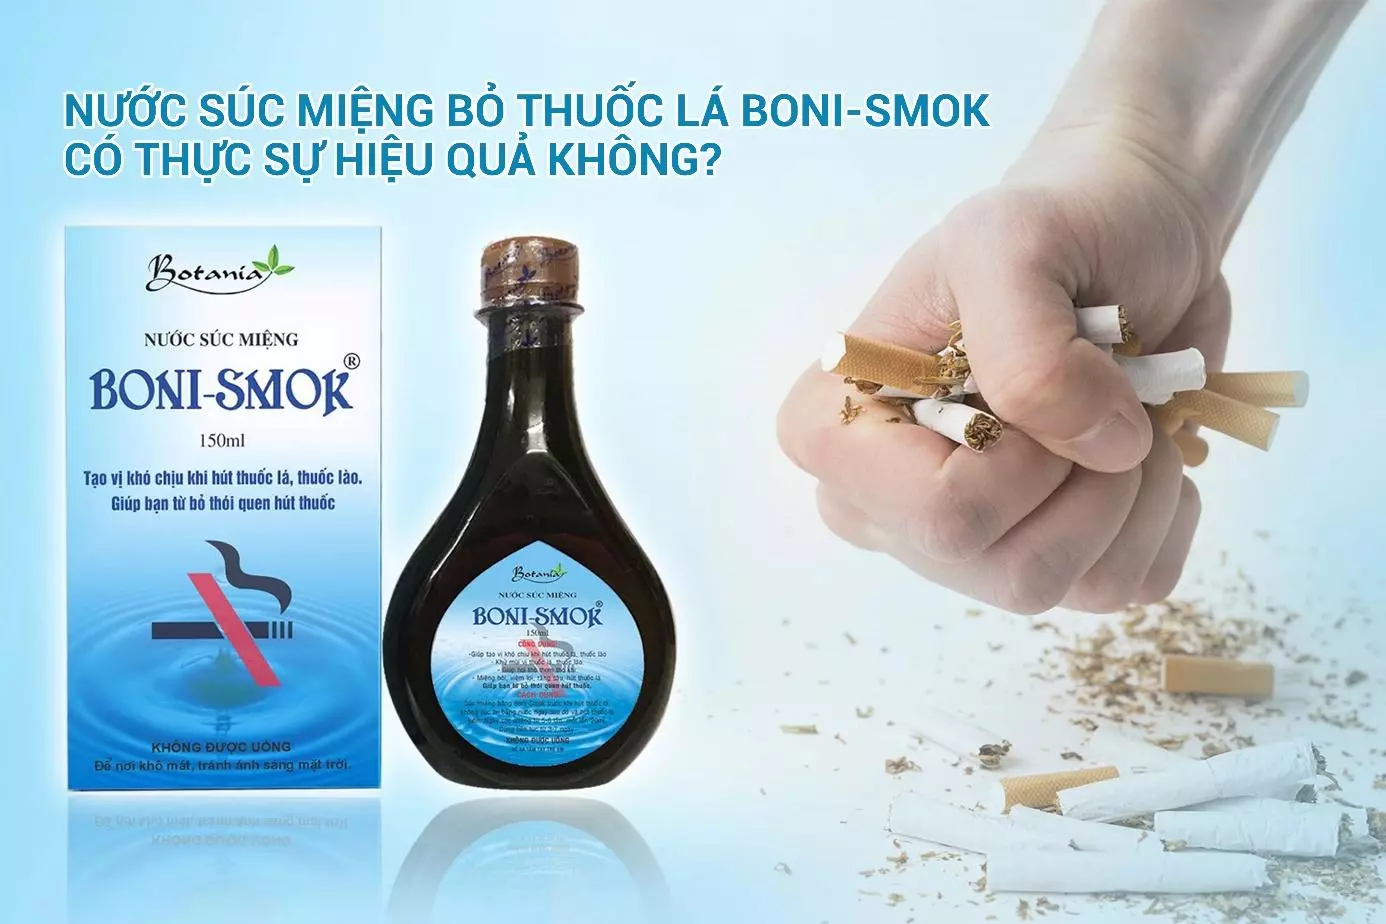 Boni Smok - Nuớc súc miệng giúp bạn từ bỏ thuốc lá một cách dễ dàng